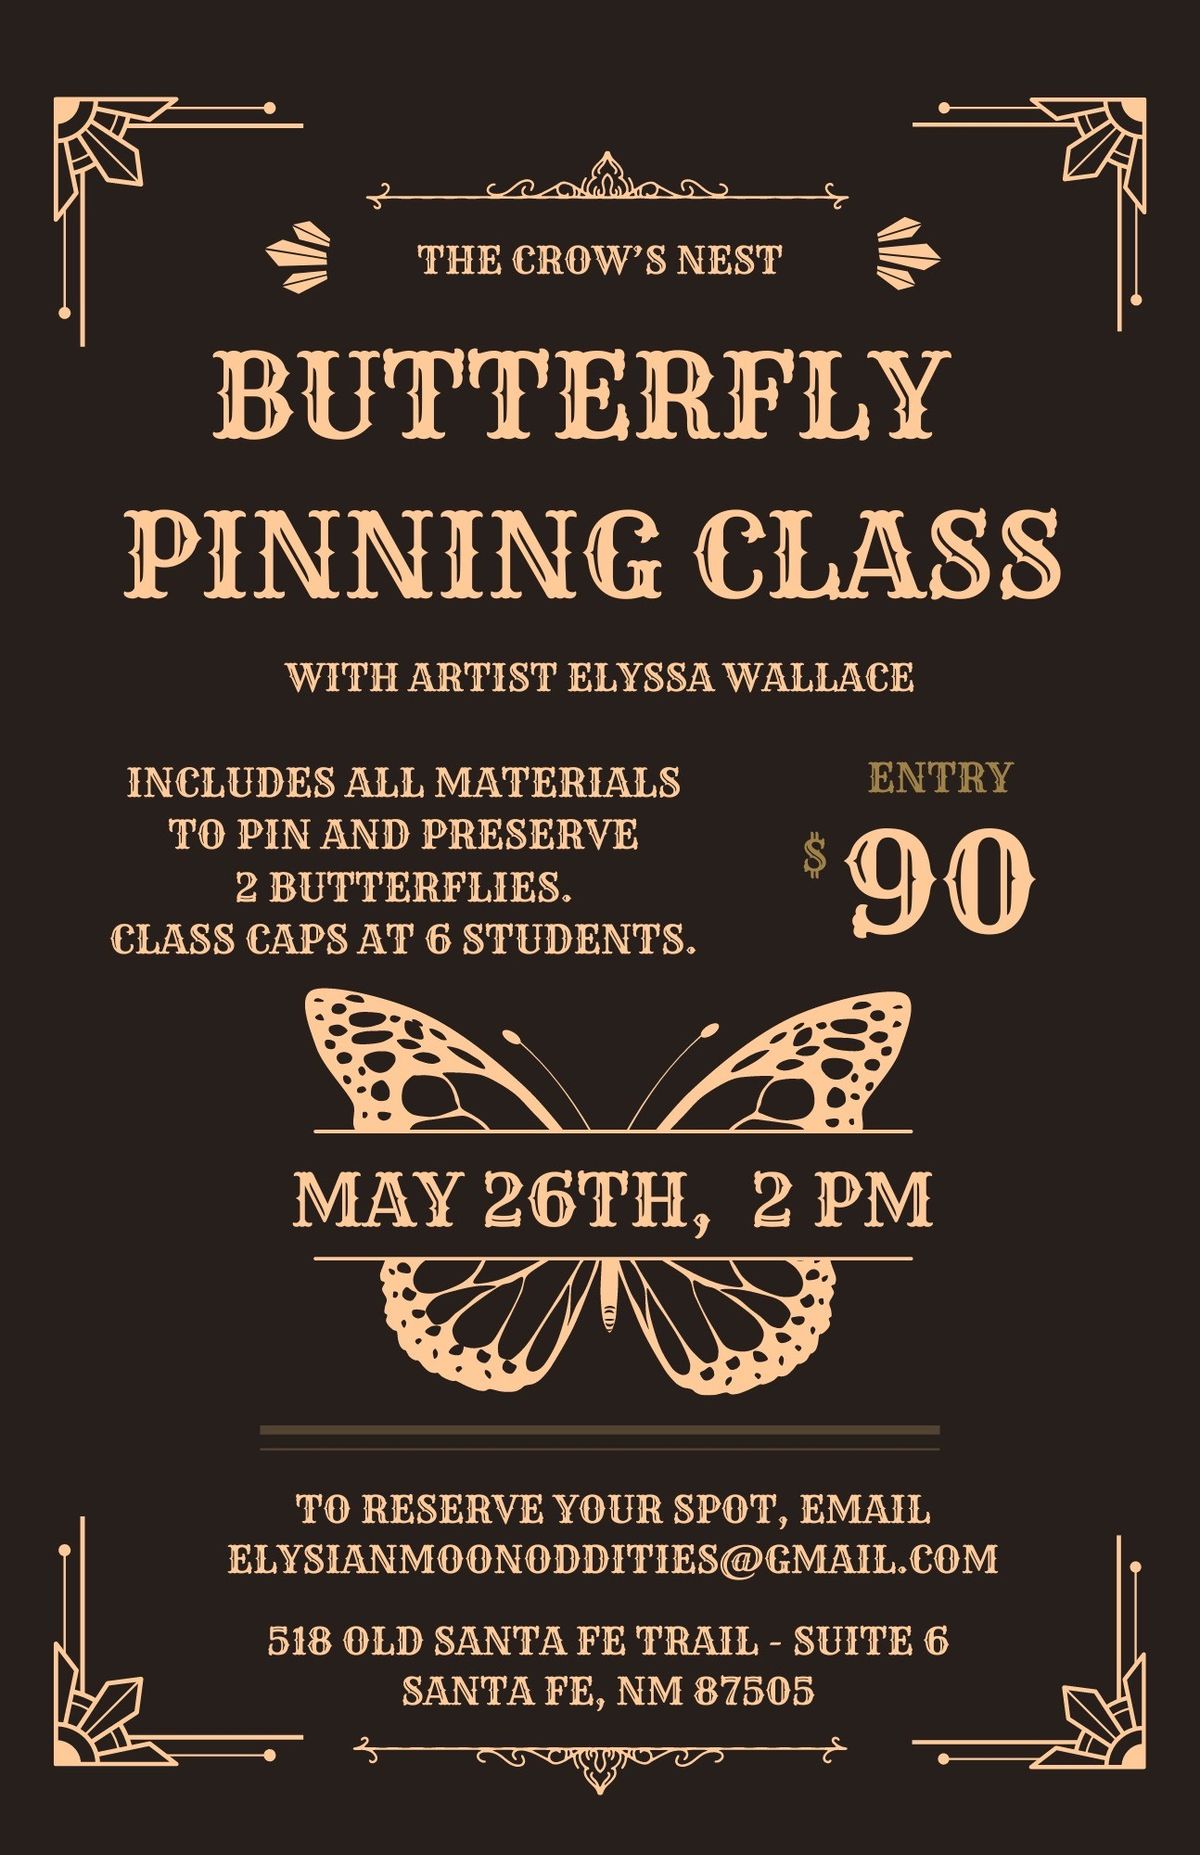 Butterfly Pinning Class